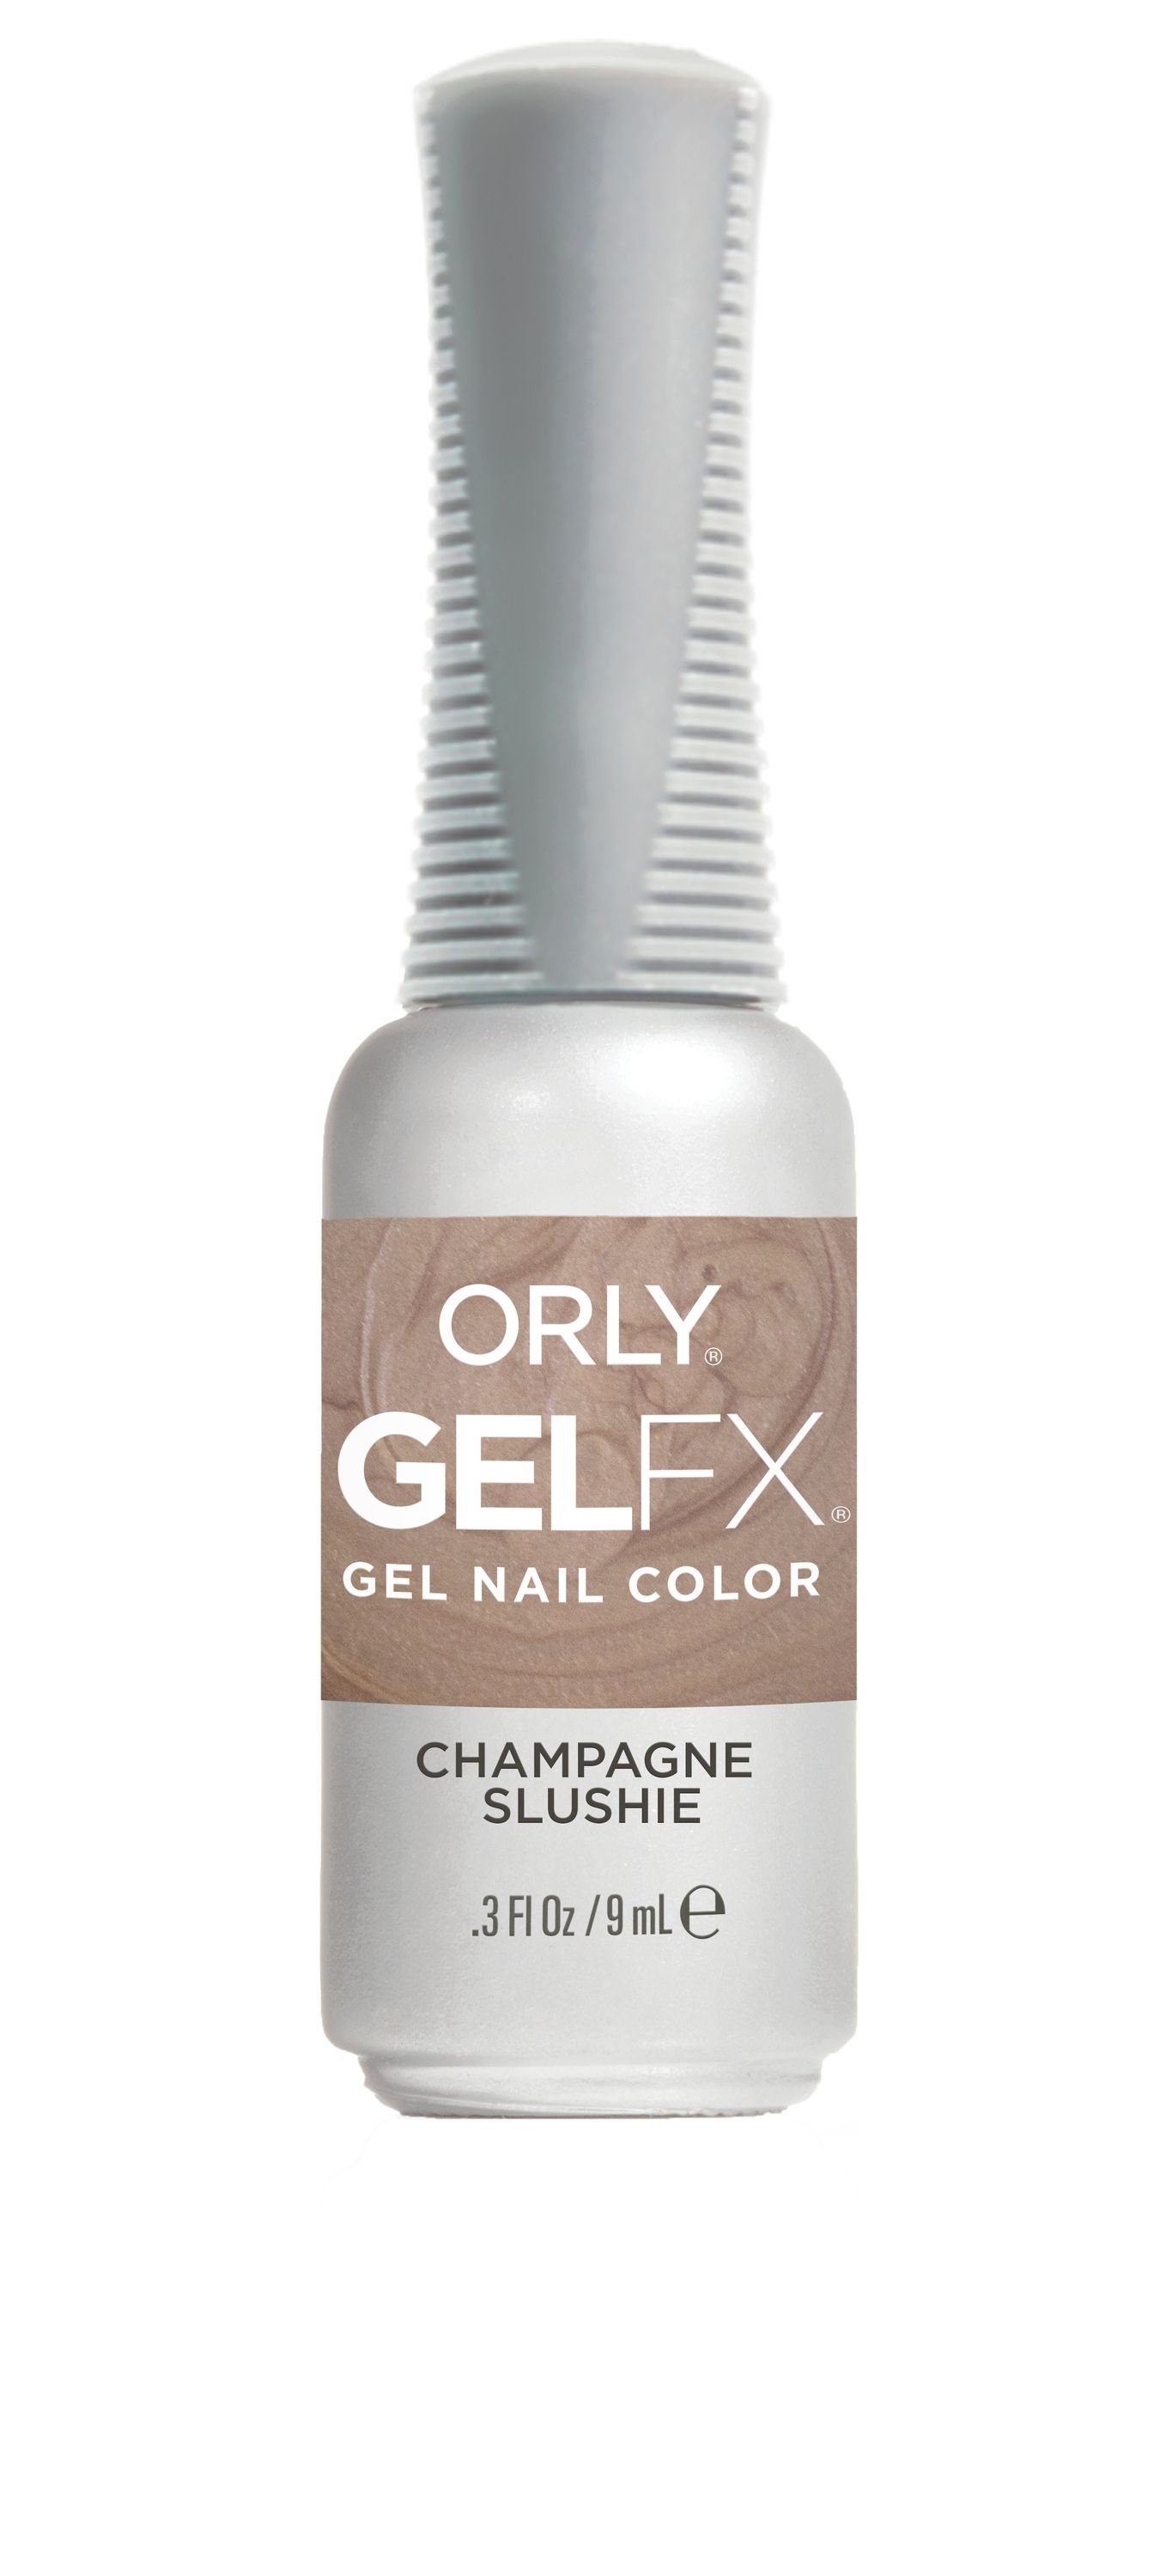 ORLY UV-Nagellack GEL FX Champagne Slushie, 9ML